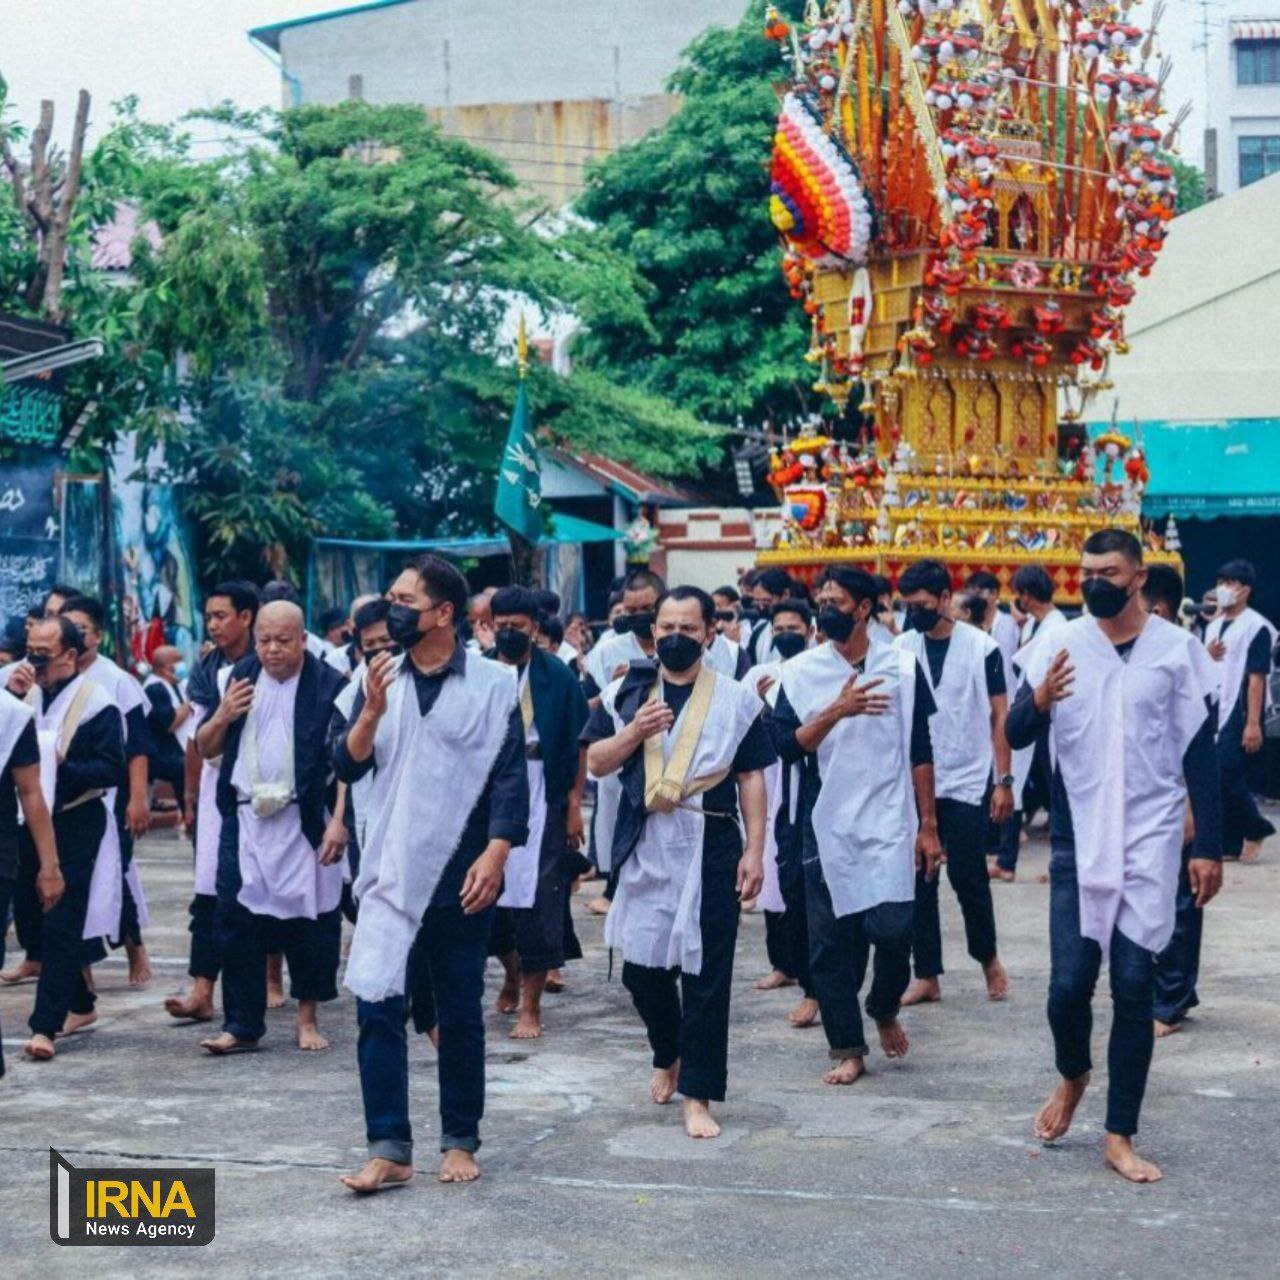 مراسم عزاداری شیعیان در تایلند + عکس